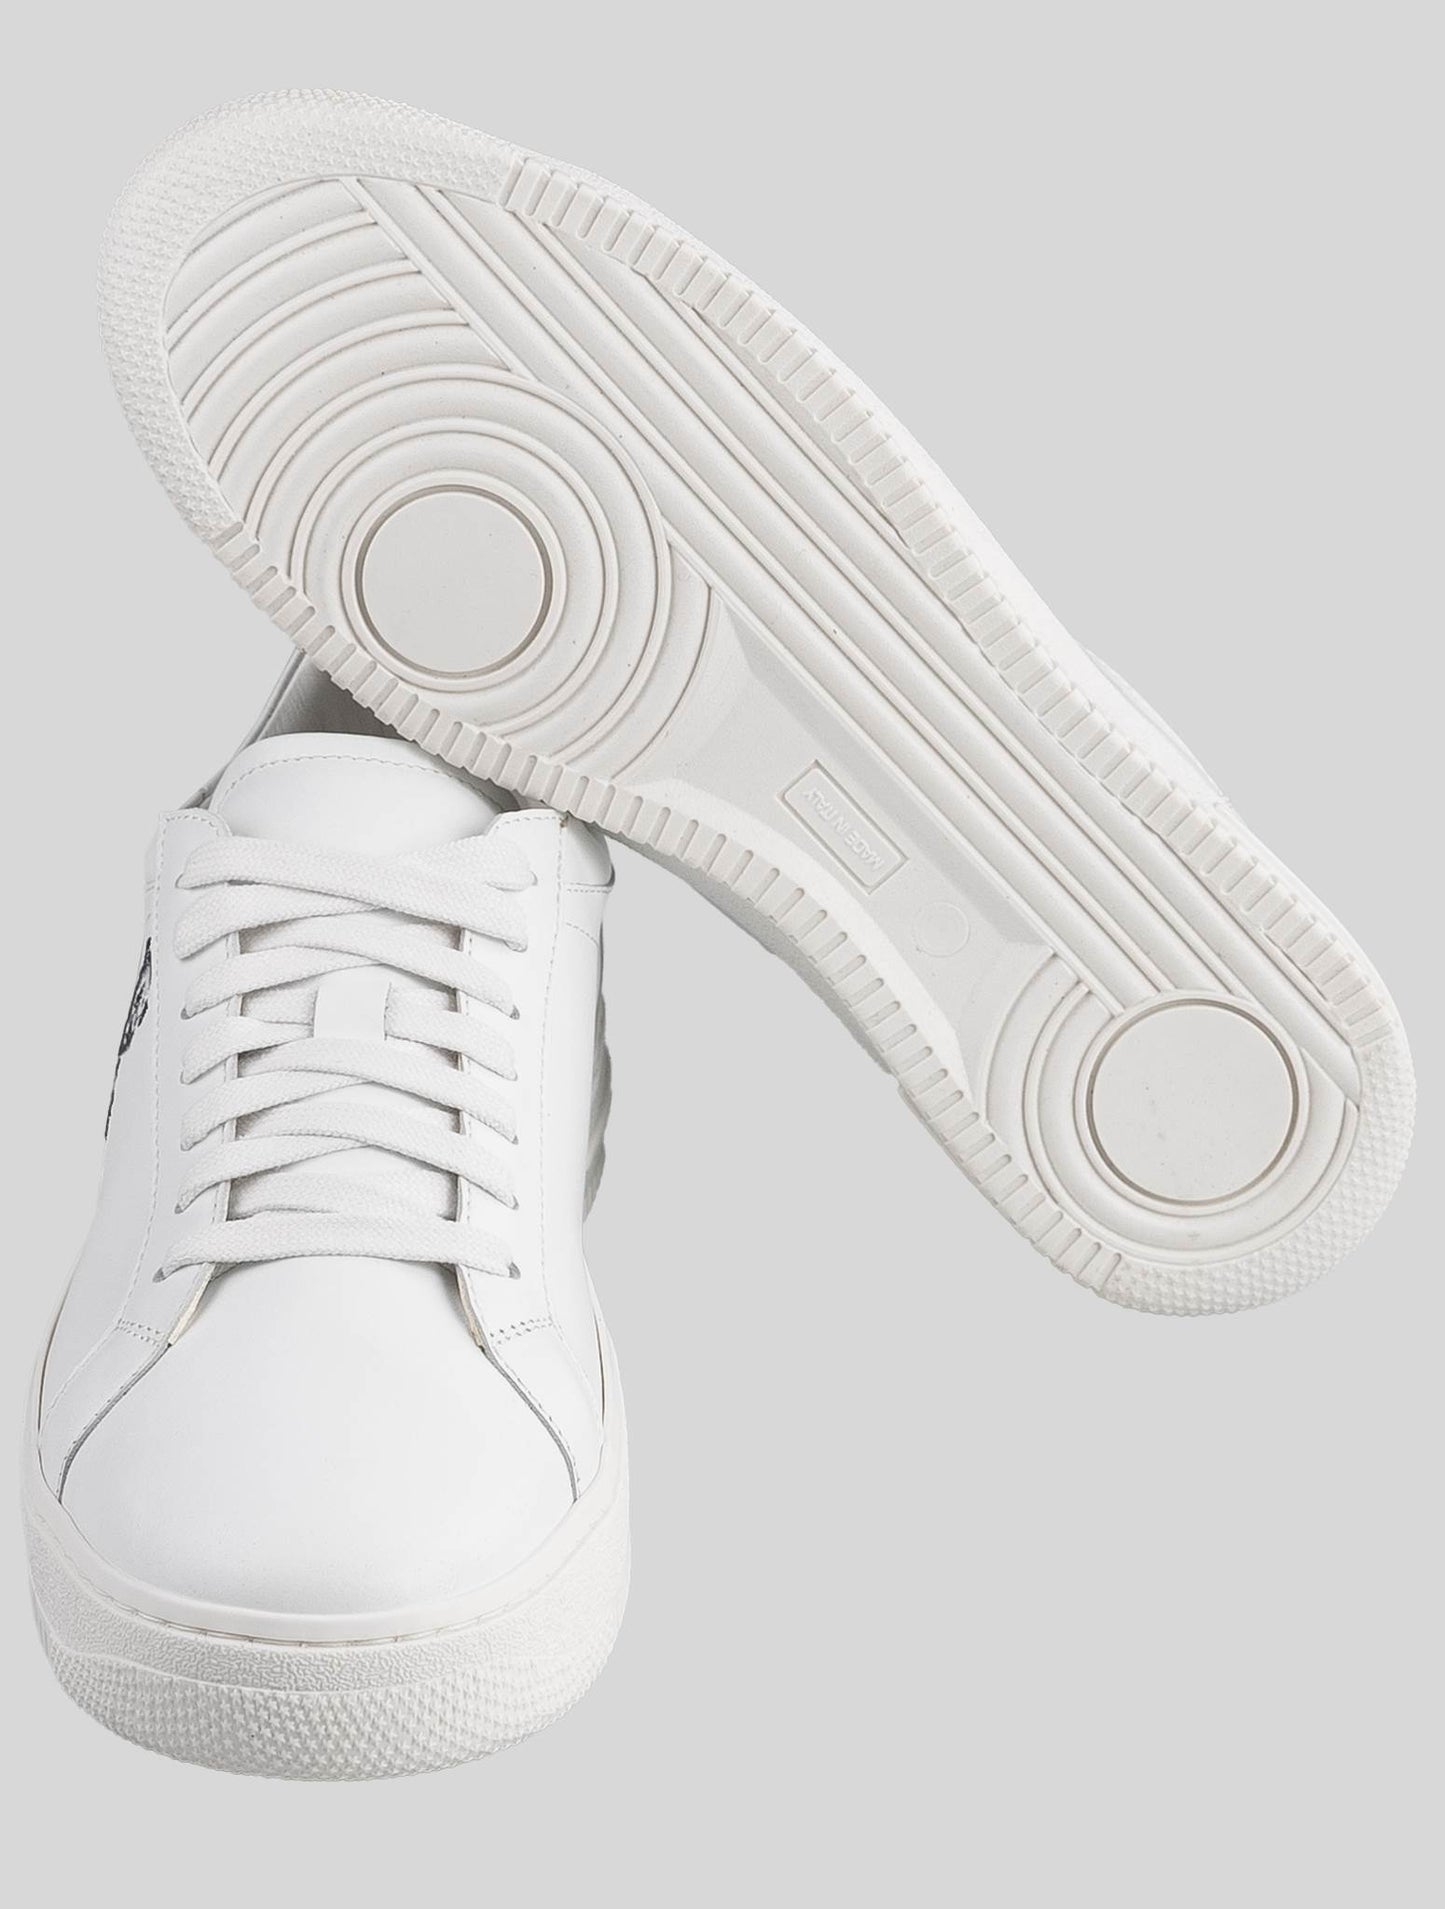 KNT Kiton 白色皮革运动鞋特别版